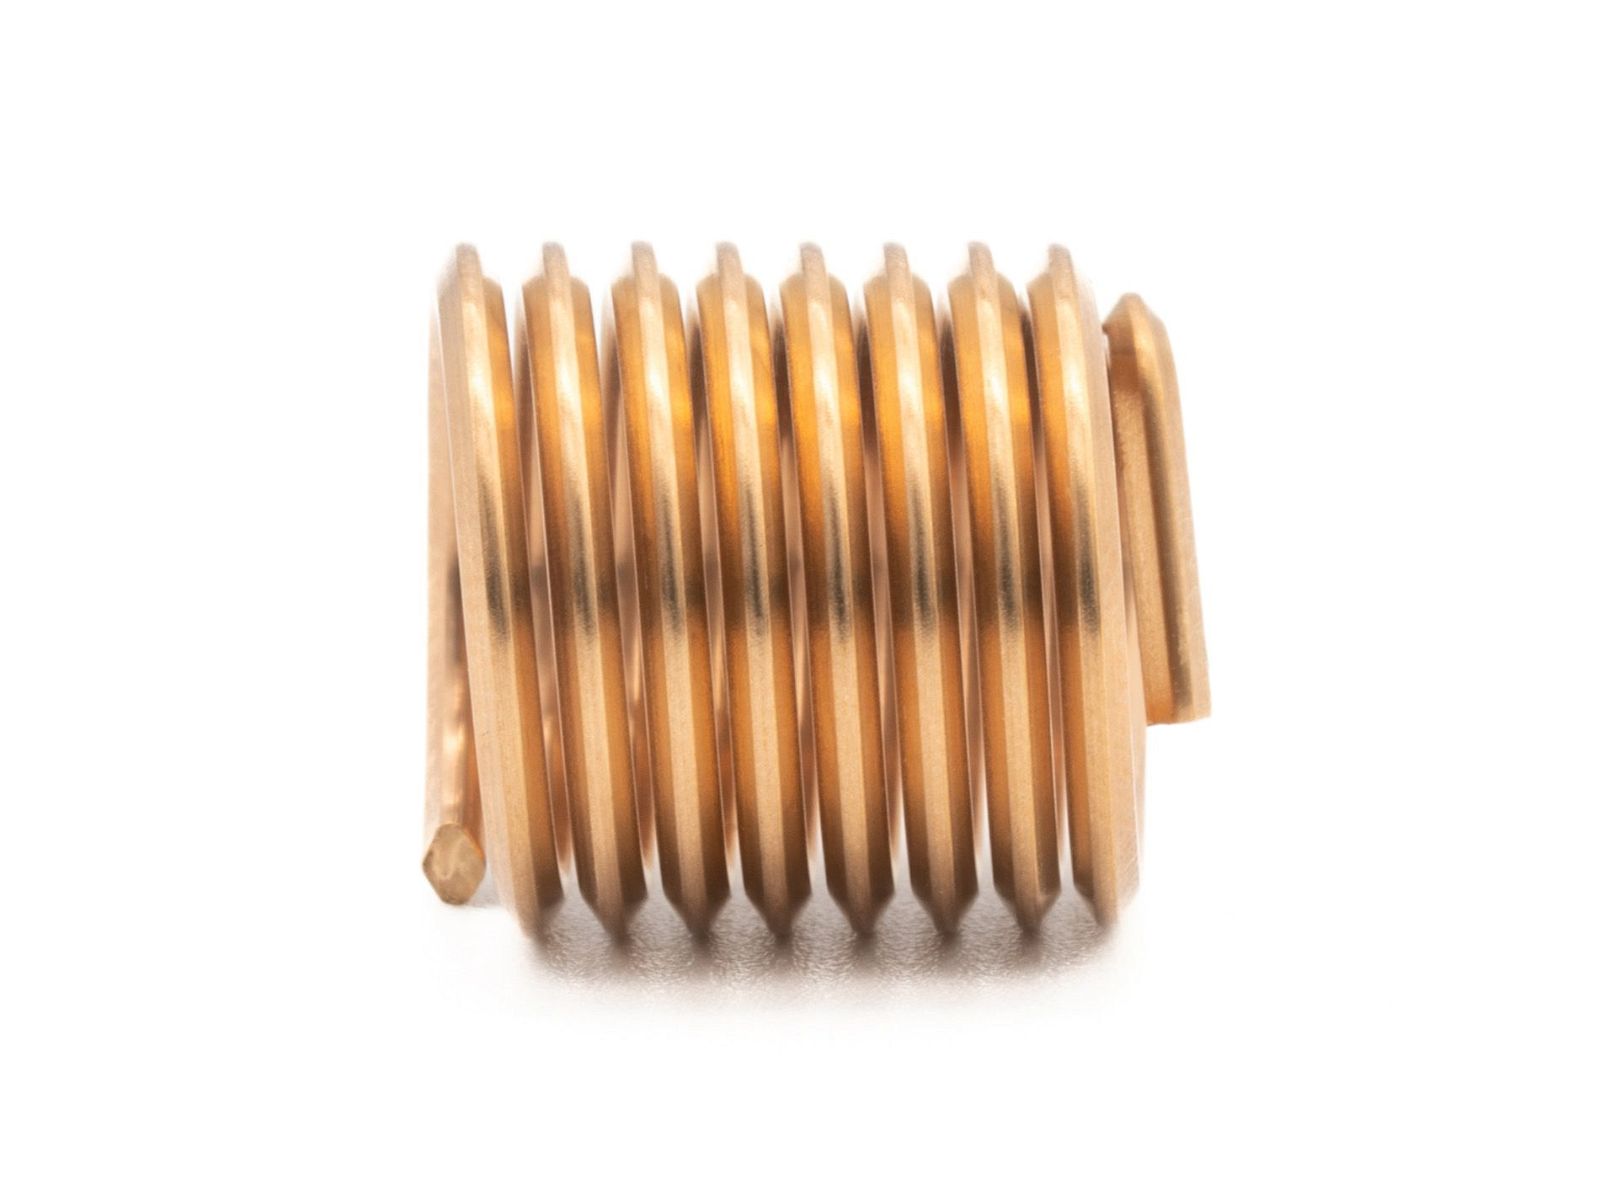 BaerCoil Drahtgewindeeinsätze M 20 x 2,5 - 1,5 D (30 mm) - frei durchlaufend - Bronze - 100 Stück